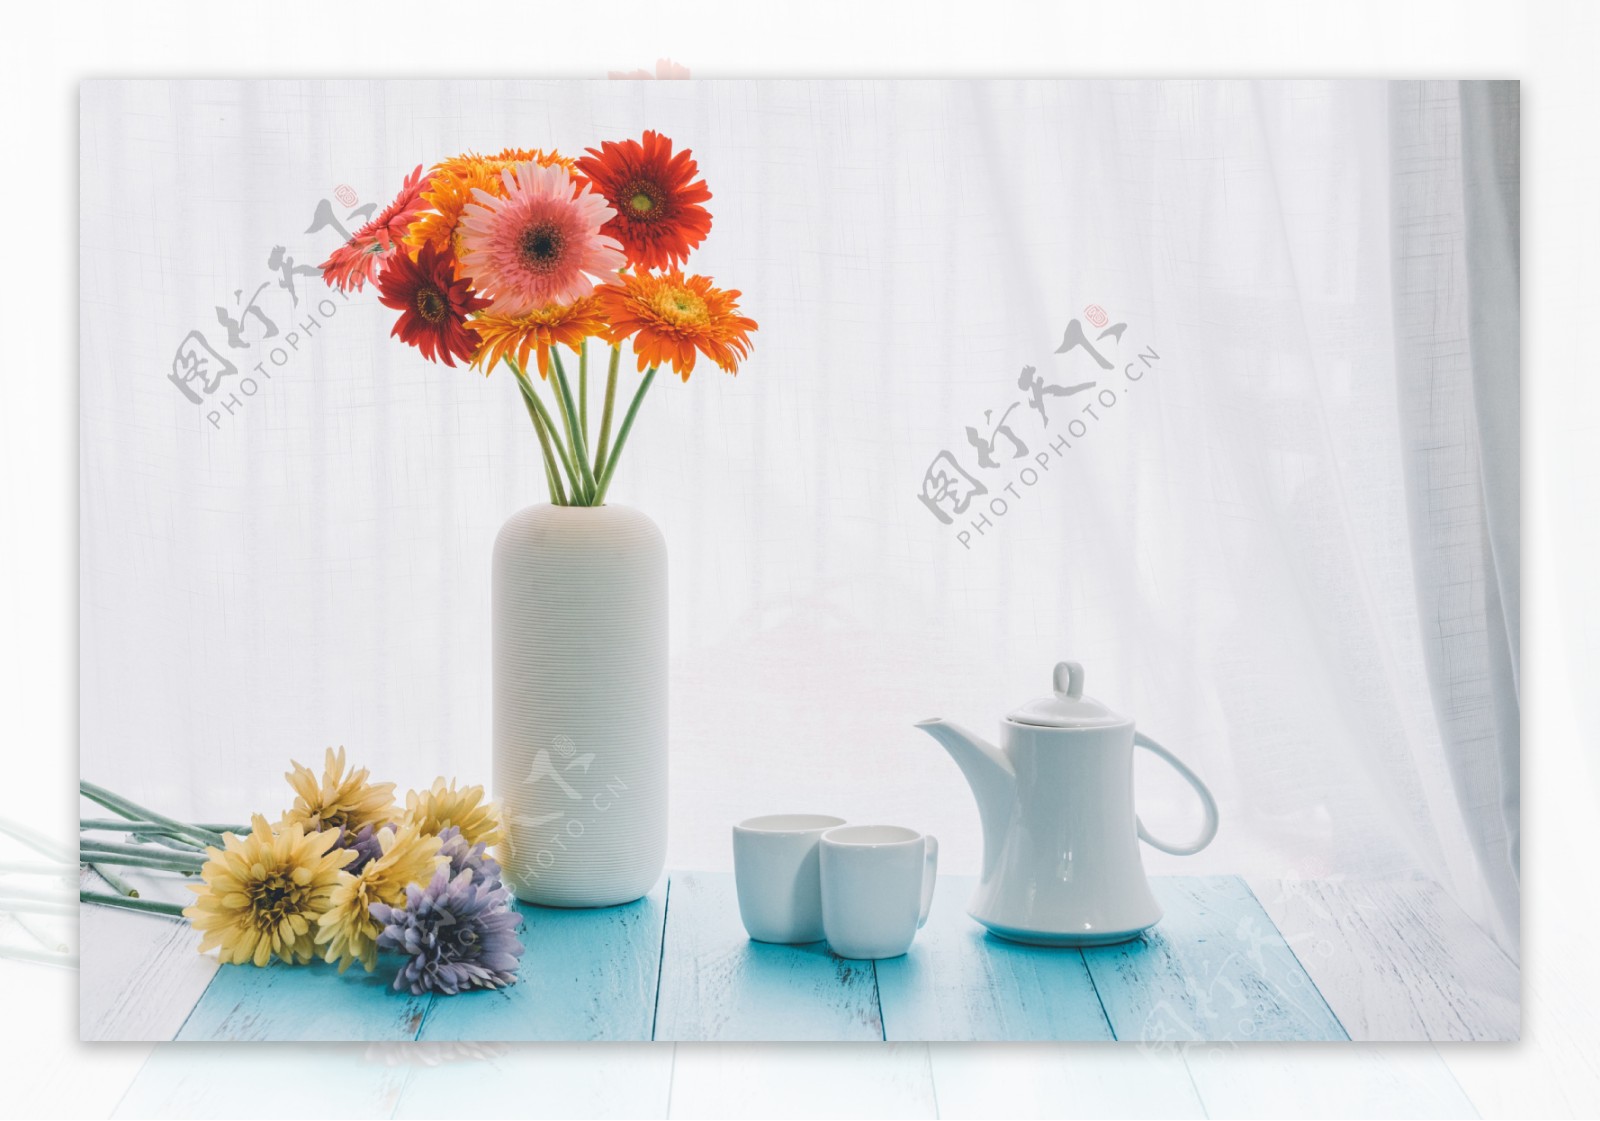 花瓶与茶具